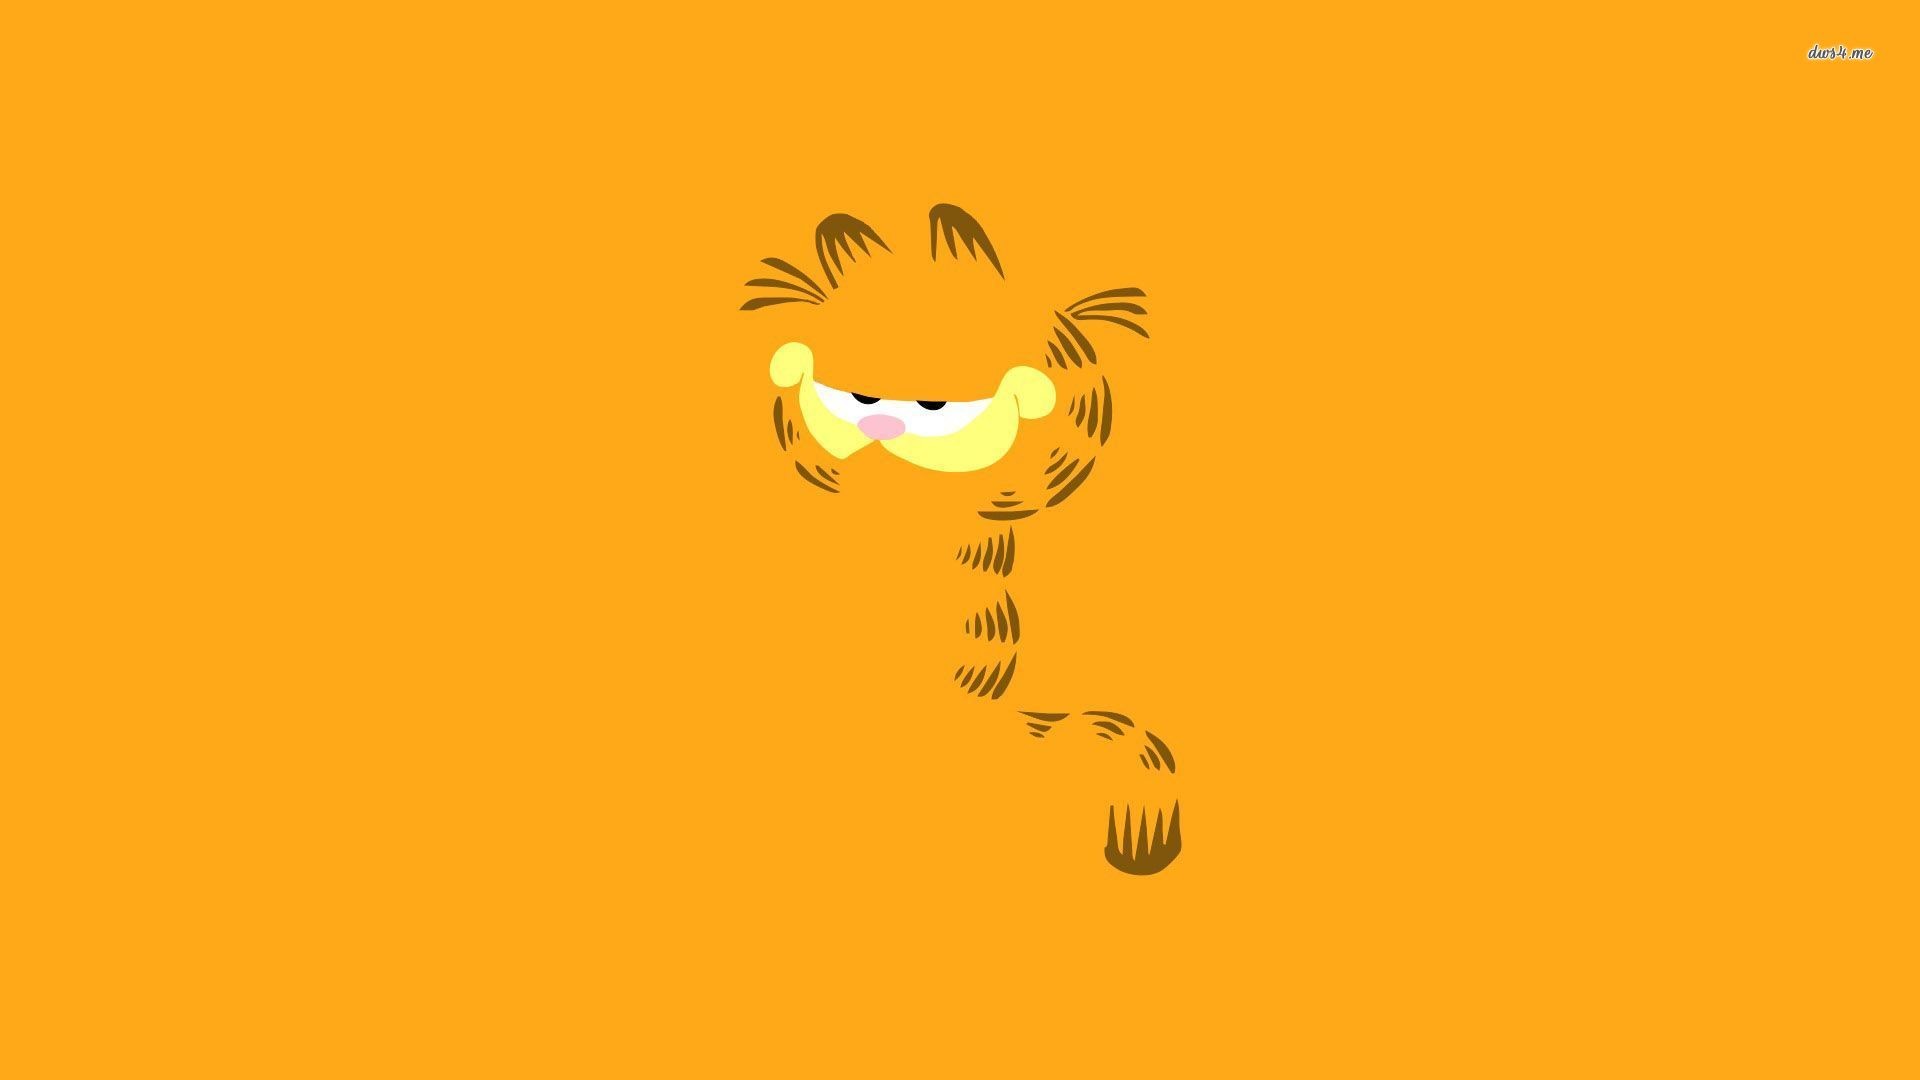 Garfield Cartoon Wallpaper for iPhone 6 - Cartoons Backgrounds